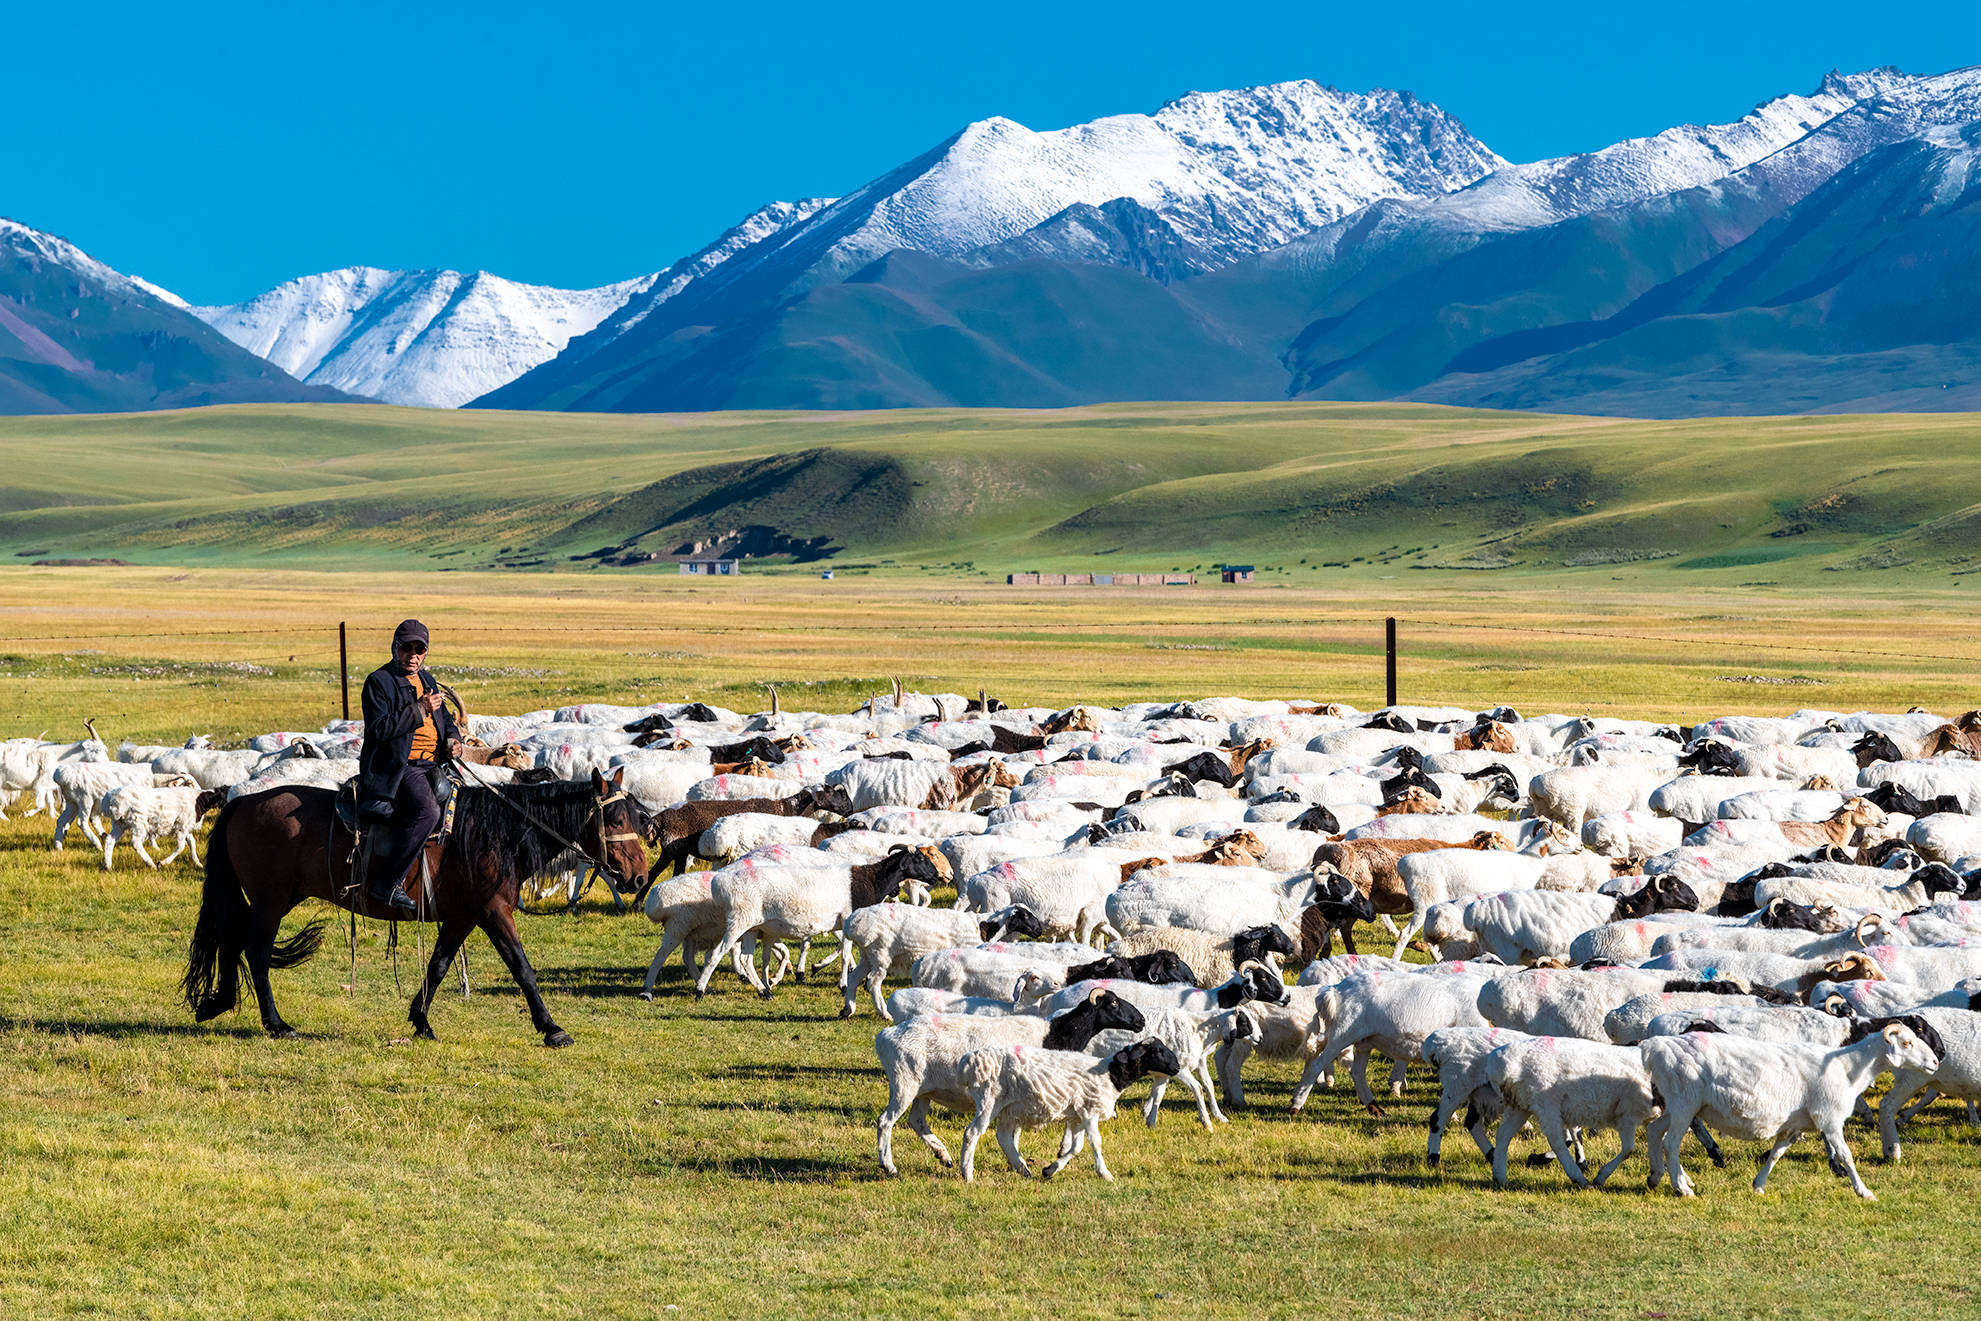 四周为雪山环抱,是新疆最重要的畜牧业基地之一,进入八月草原上的草